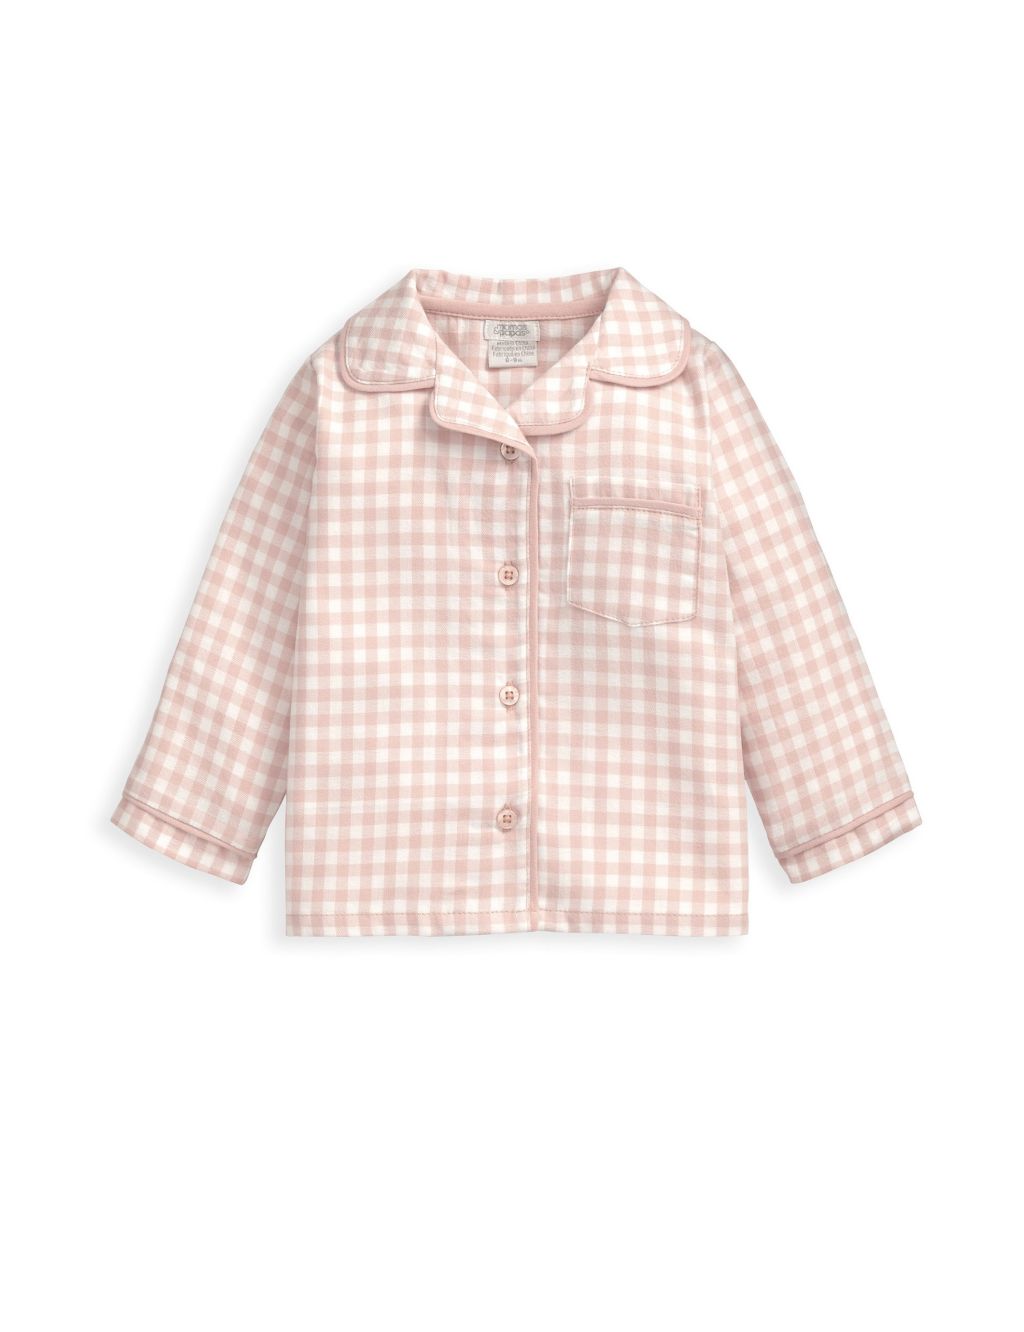 Pink Check Woven Pyjamas (6 Mths-3 yrs) 1 of 4